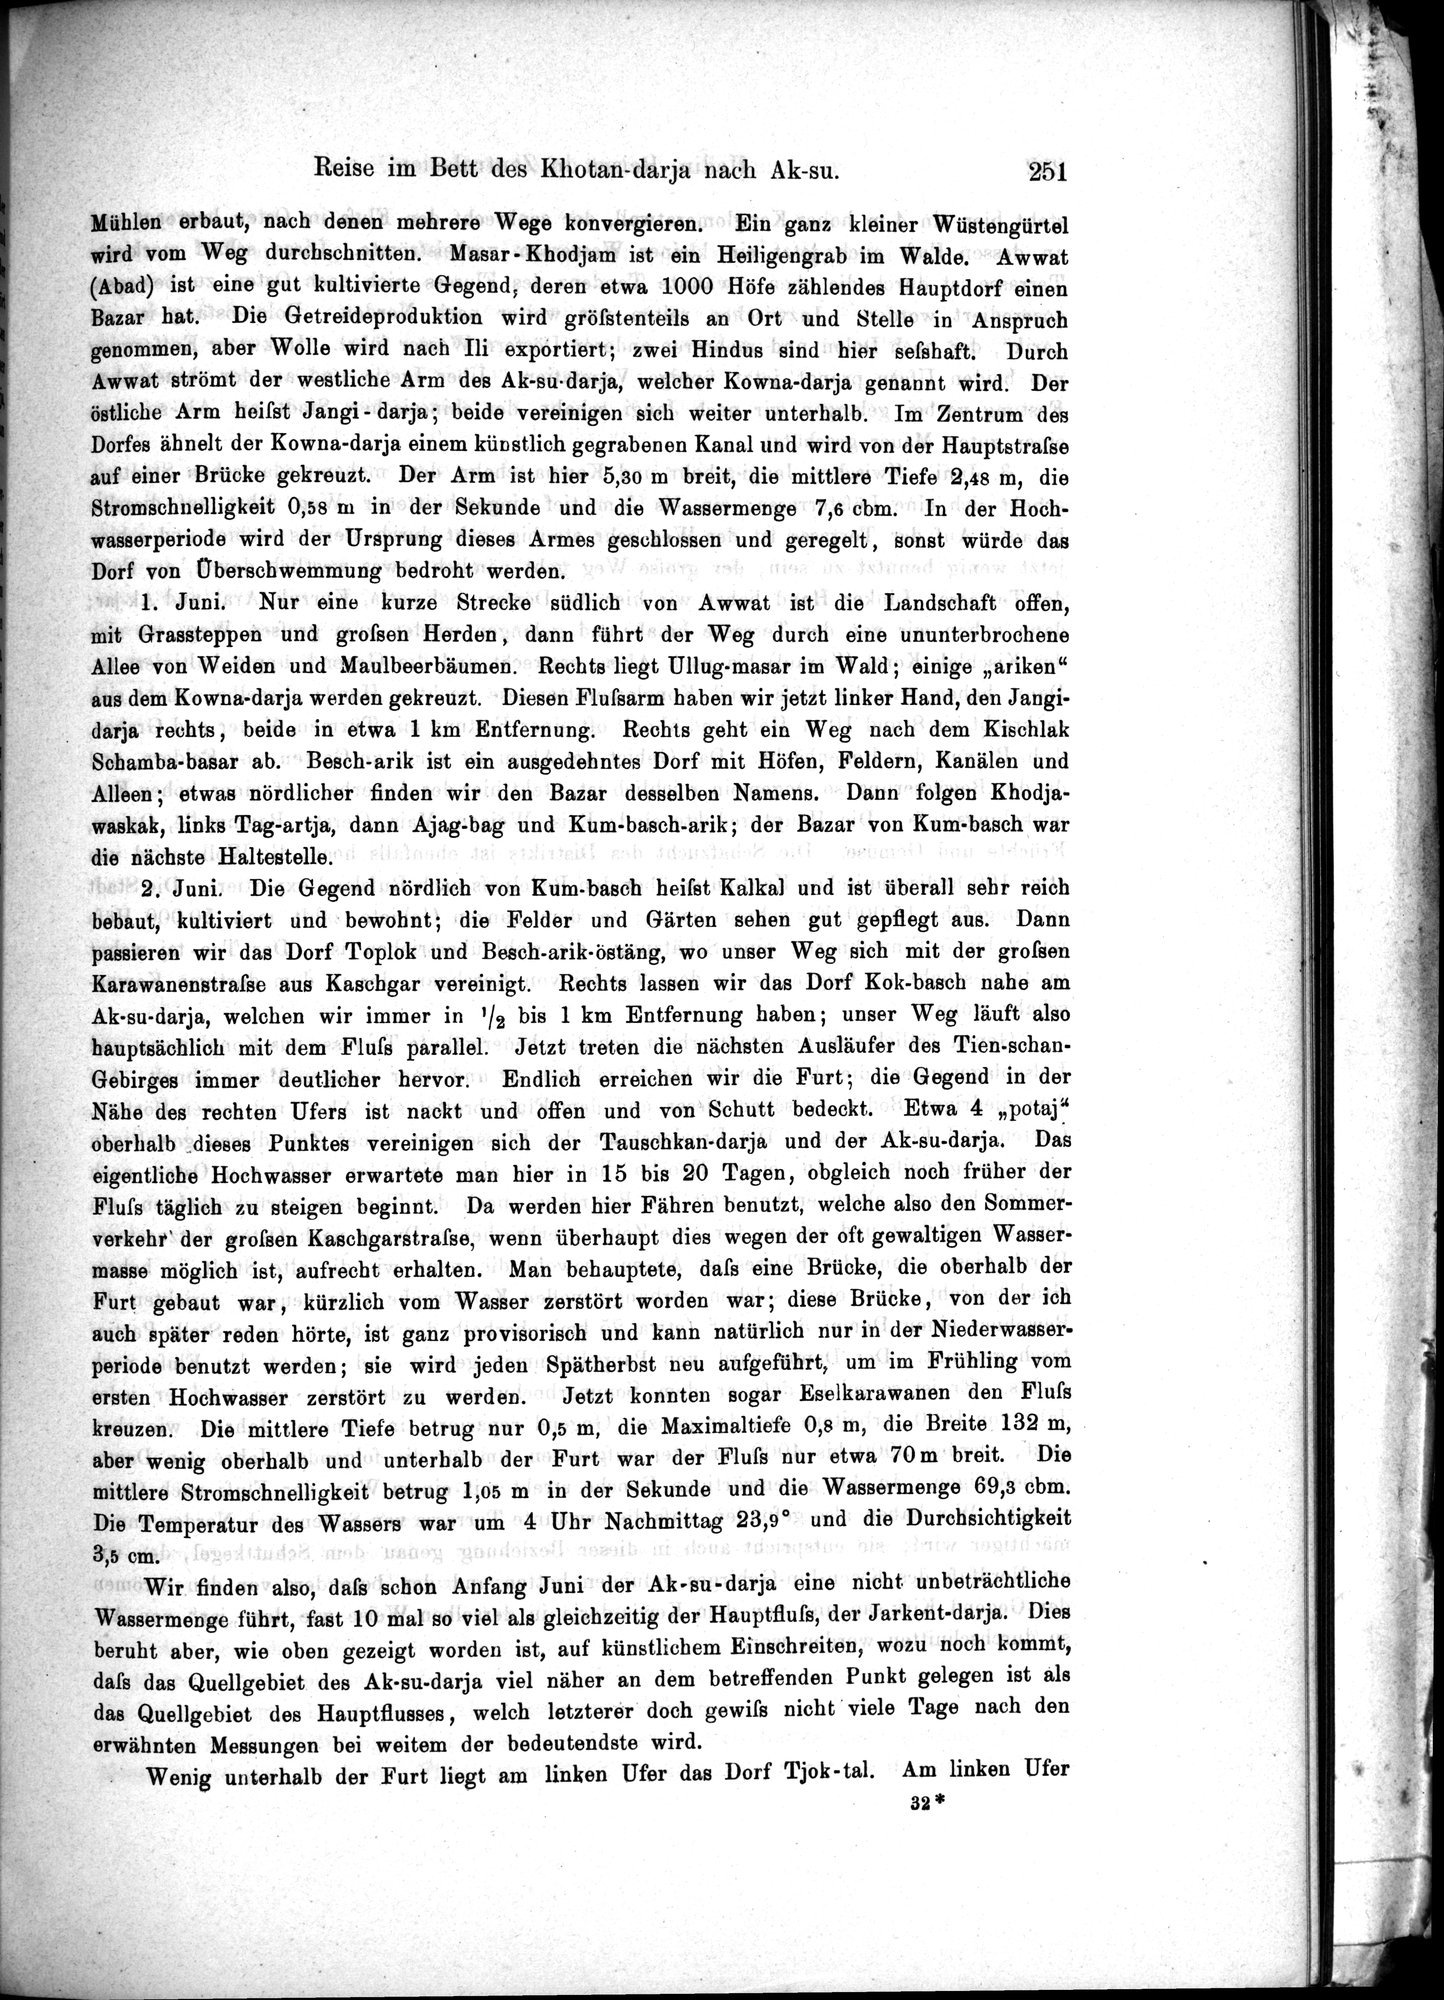 Die Geographische-Wissenschaftlichen Ergebnisse meiner Reisen in Zentralasien, 1894-1897 : vol.1 / Page 263 (Grayscale High Resolution Image)